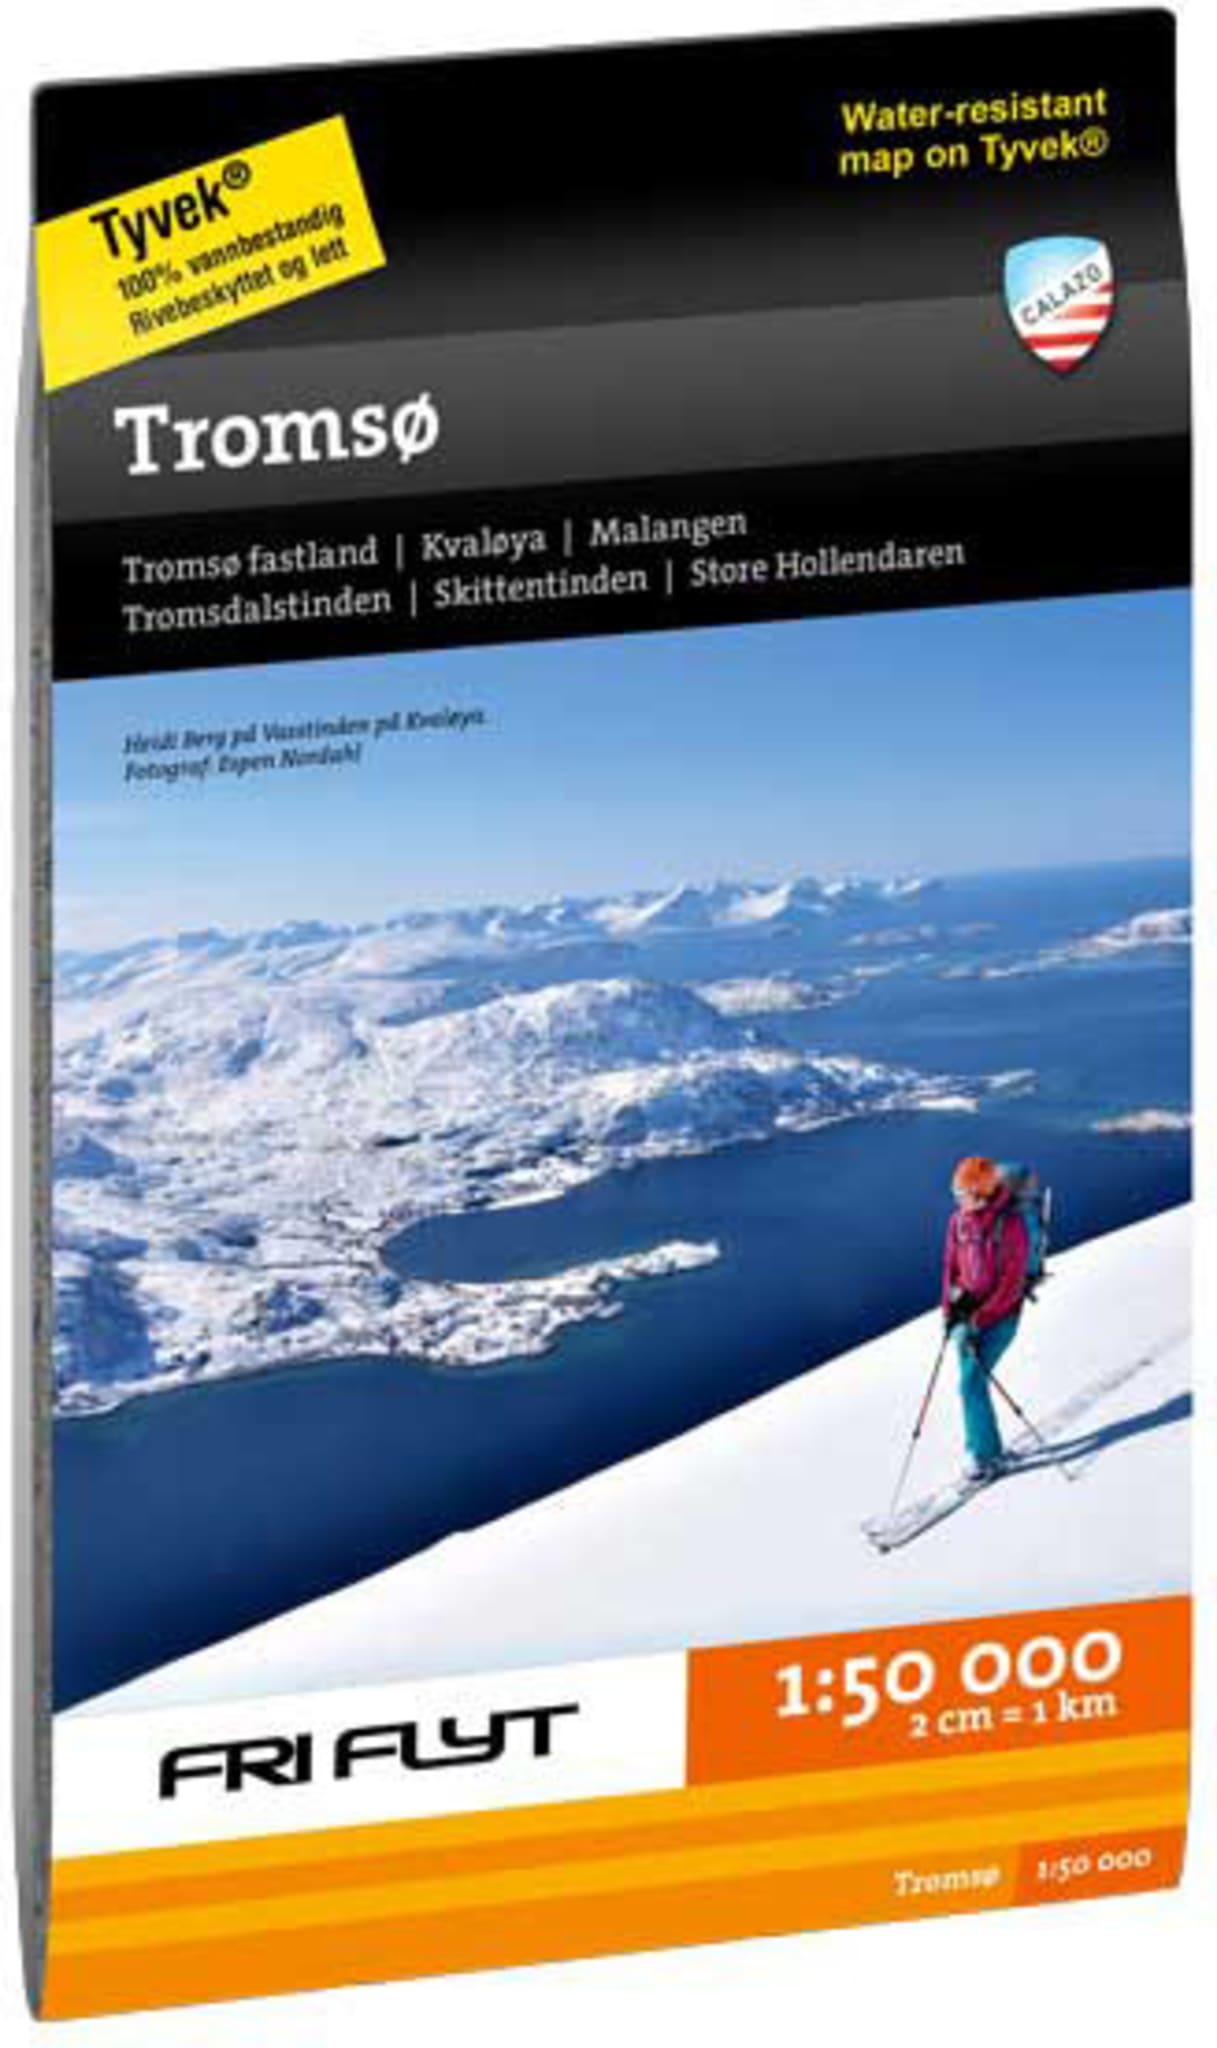 Skal du til Tromsø på tur? 